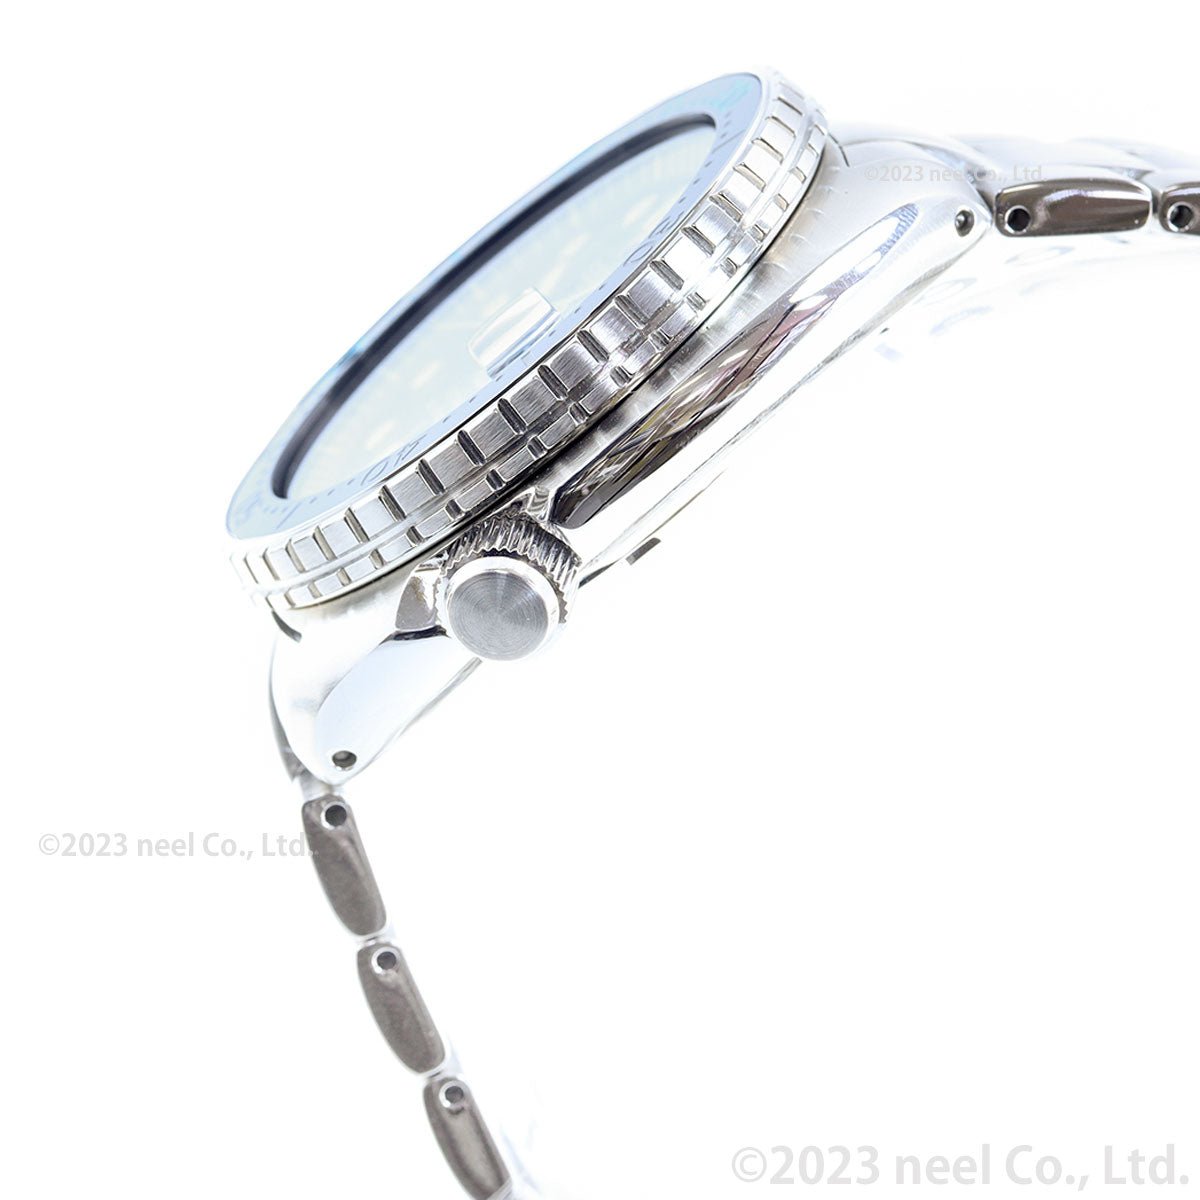 セイコー プロスペックス SEIKO PROSPEX ダイバースキューバ メカニカル 自動巻き PADIスペシャルモデル 腕時計 メンズ SBDY125【2023 新作】